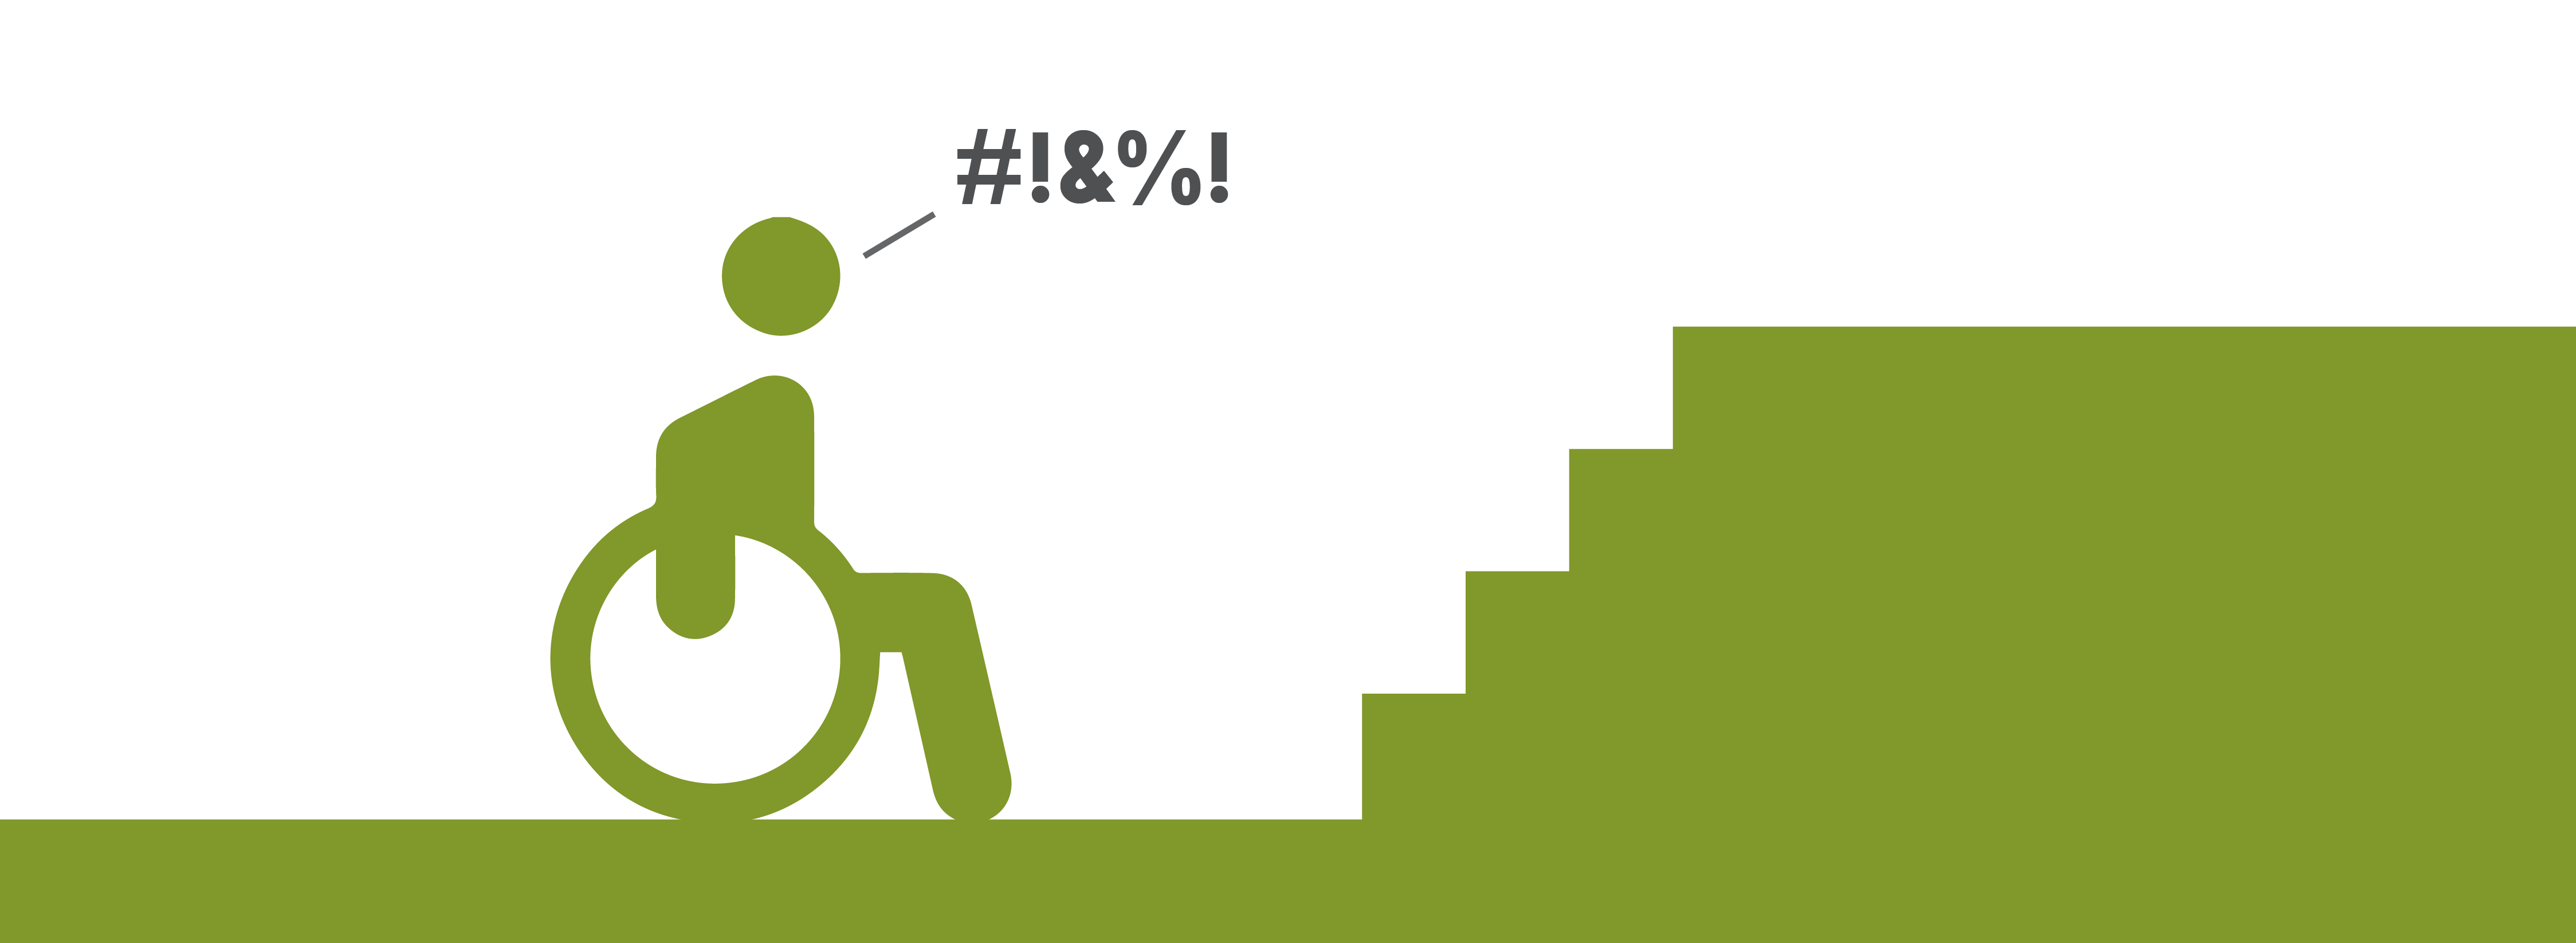 Rollstuhlfahrer-Icon ist vor einer Treppe. Schräg über dem Rollstuhlfahrer steht in einer Sprechblase: #!&%!